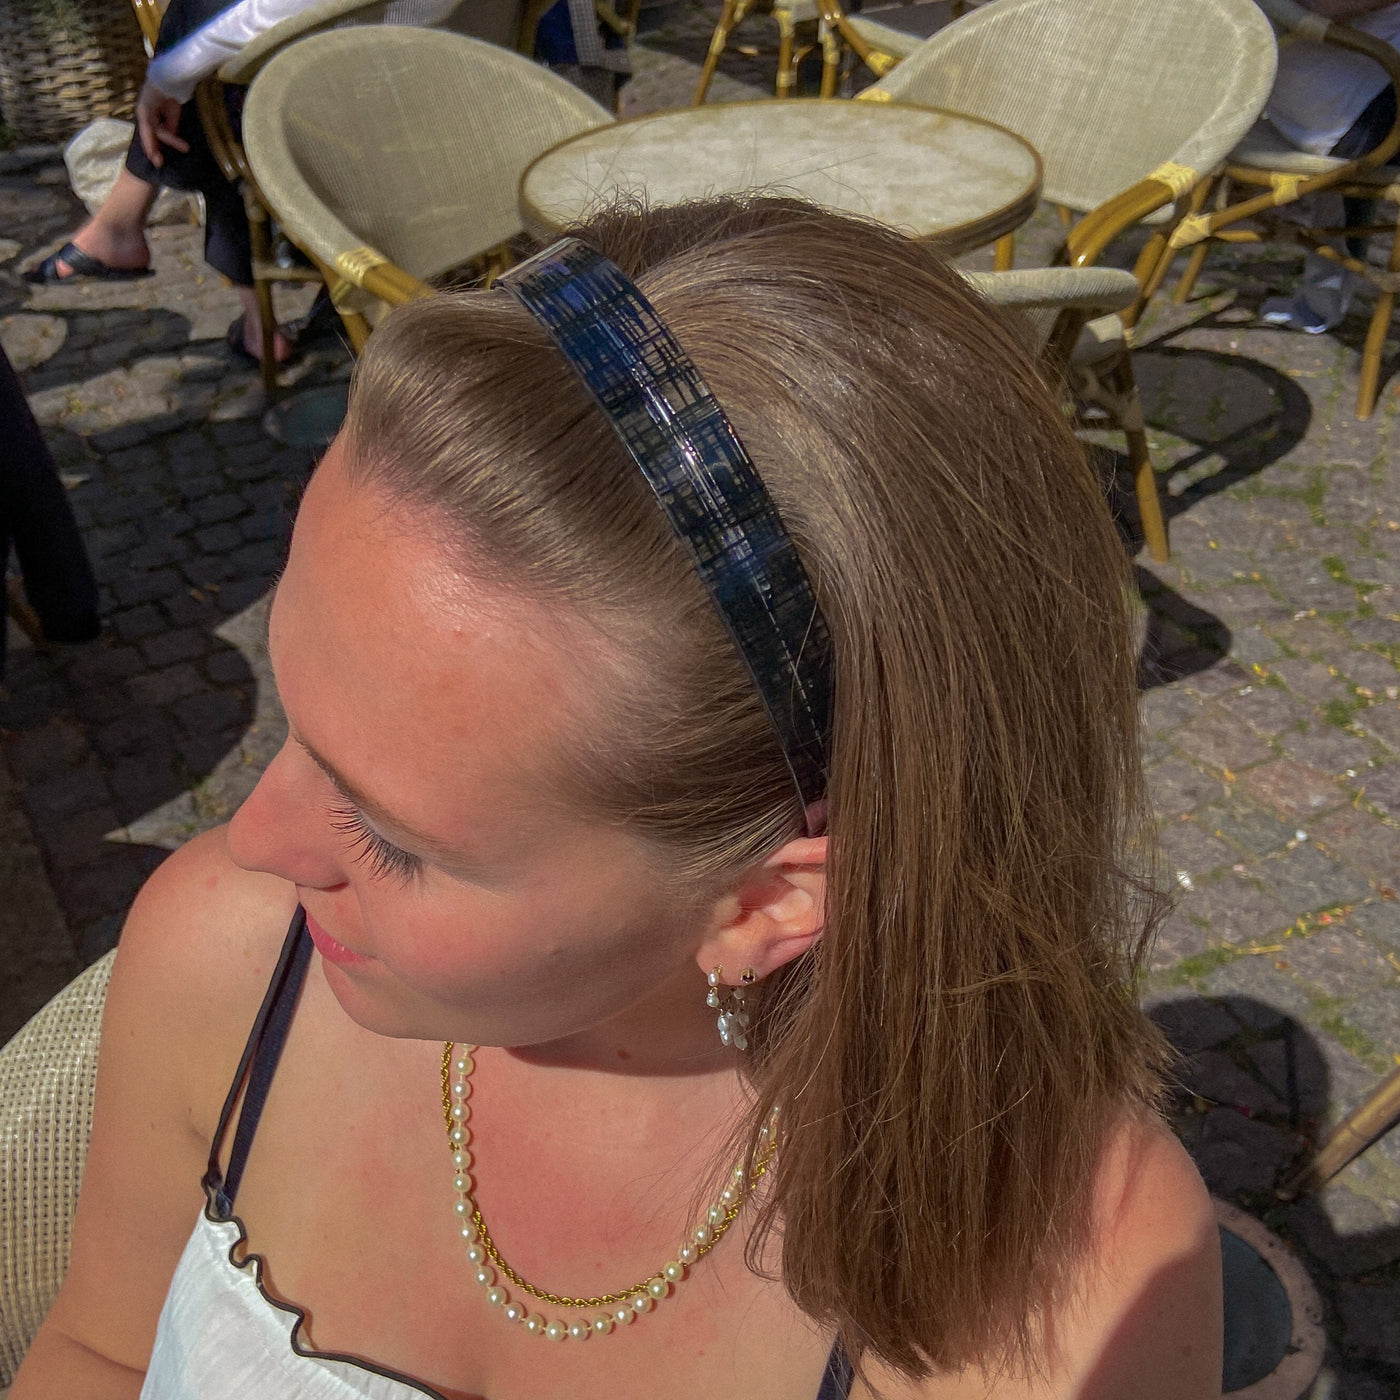 Udforsk hårbøjler - en elegant hårbøjle der ikke gør ondt bag ørerne - hårbøjler der ikke klemmer - Anna sort hårbøjle fra Orphic Style